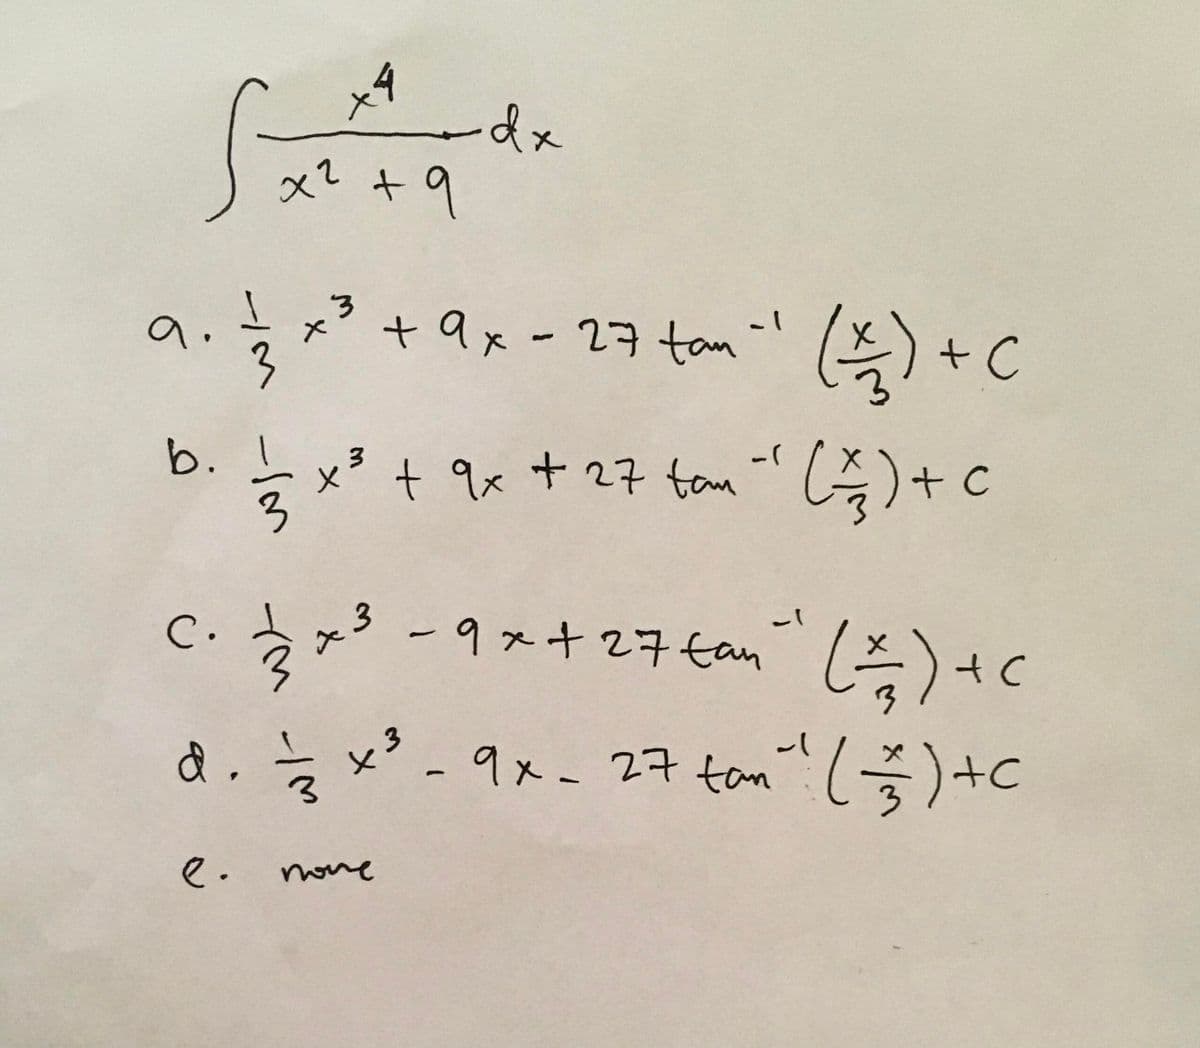 -dx
+9
a.
+ ax-27tan -' )+C
b. I
x³ + qx + 27 tam "C)+ c
-(
x² + 9x
3
-9ス+276om C)+c
с.
à.x*-9x- 27 tom 1号)+C
tan" (-)+c
e.
noue
3.
3.
ー1M
メ
(M -/M
C.
